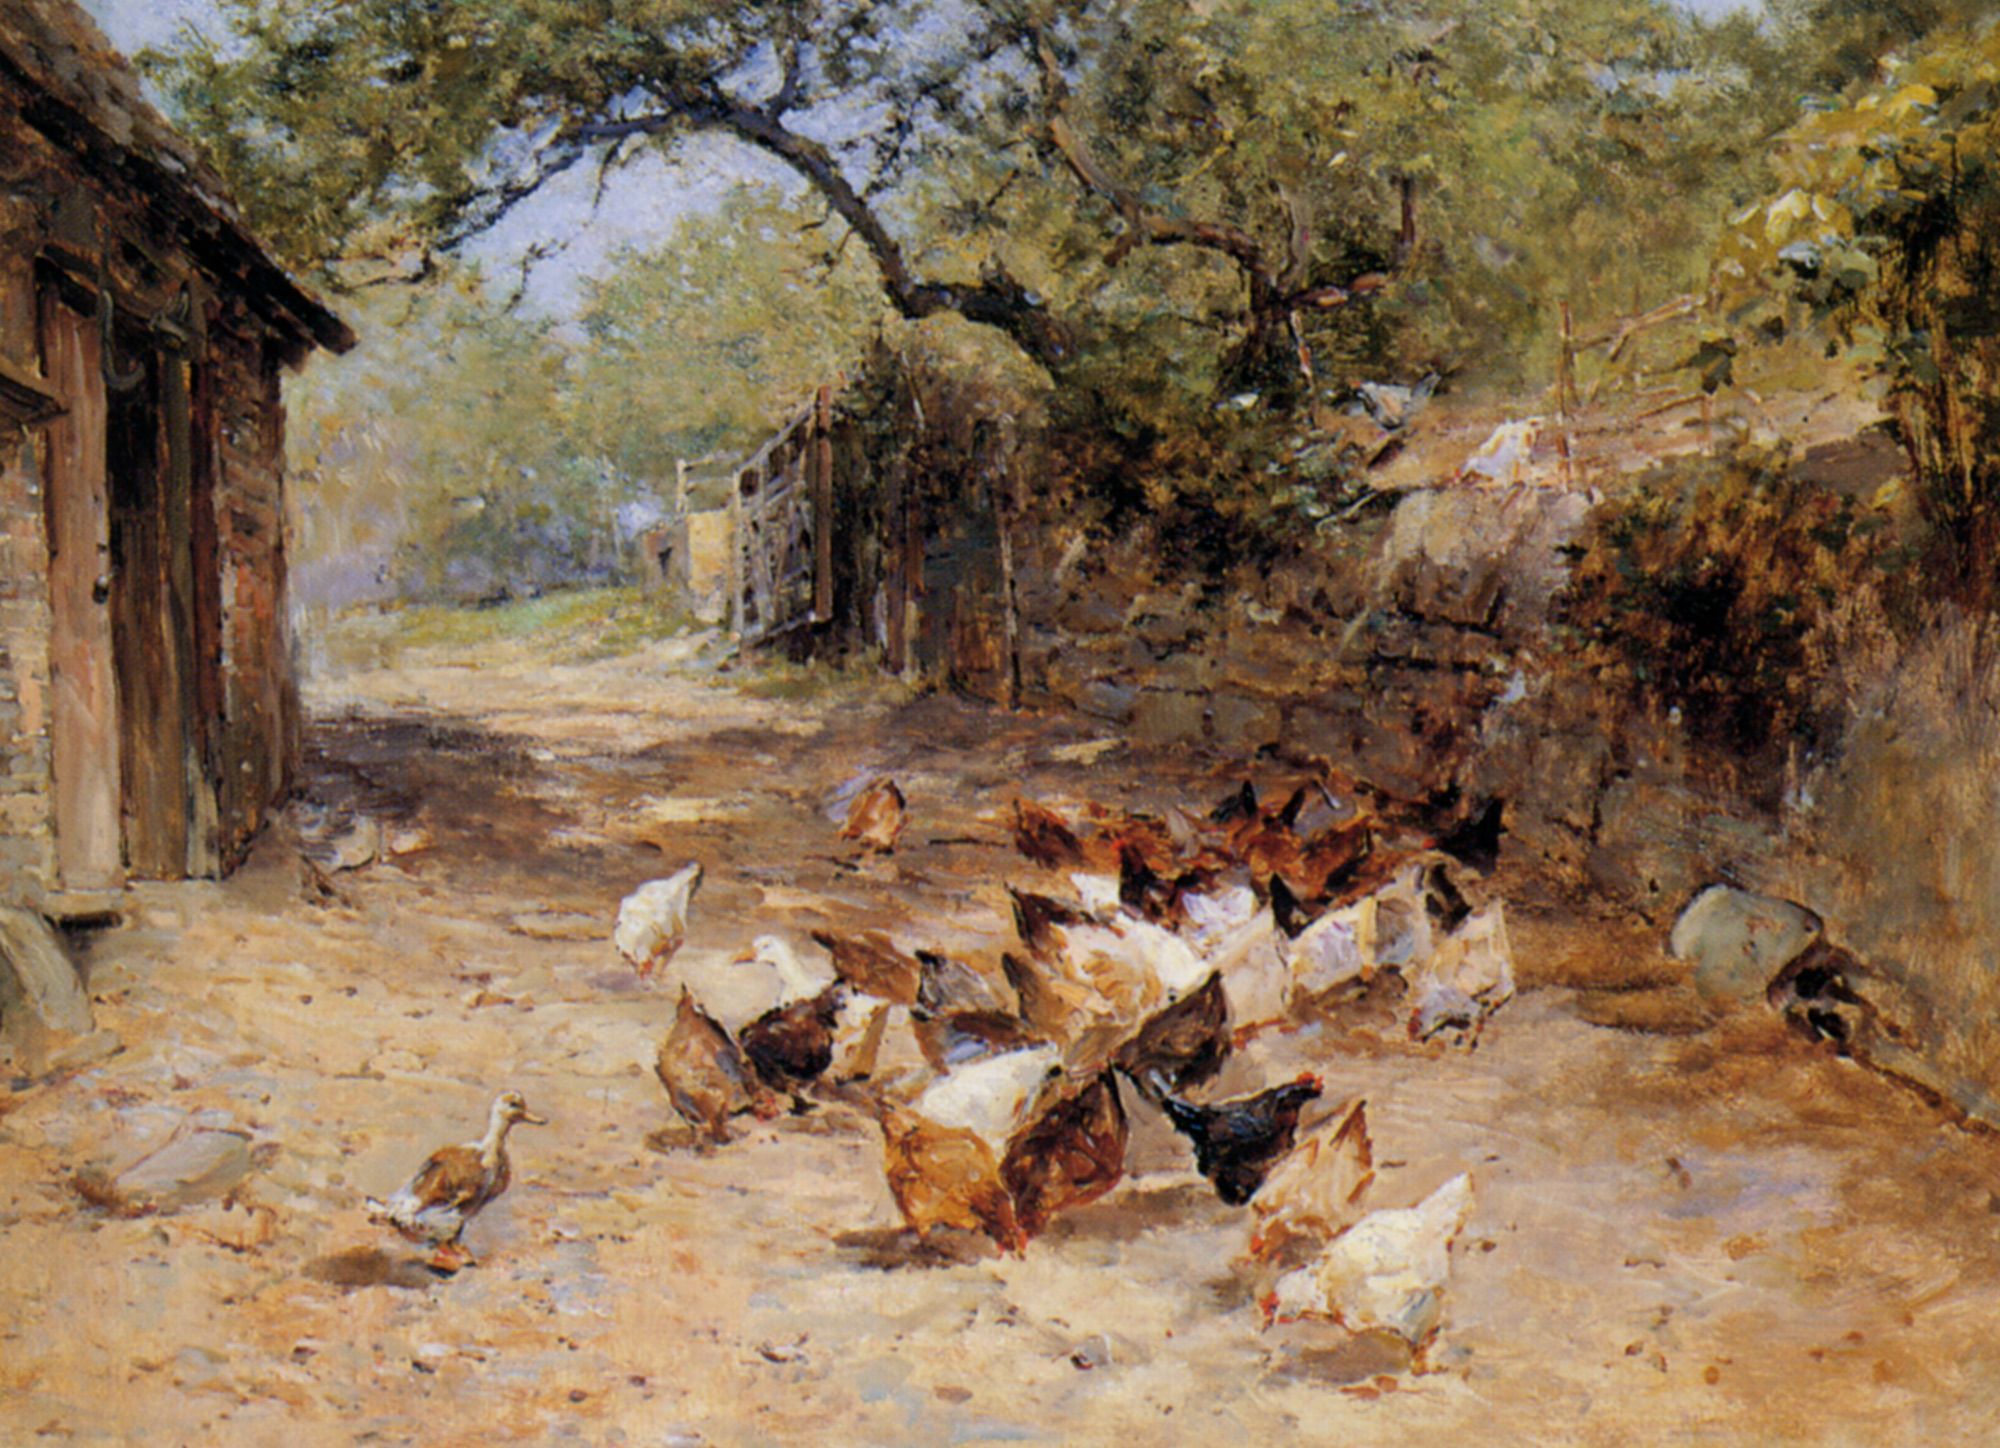 Chickens in a Farmyard by Ernest Walbourn